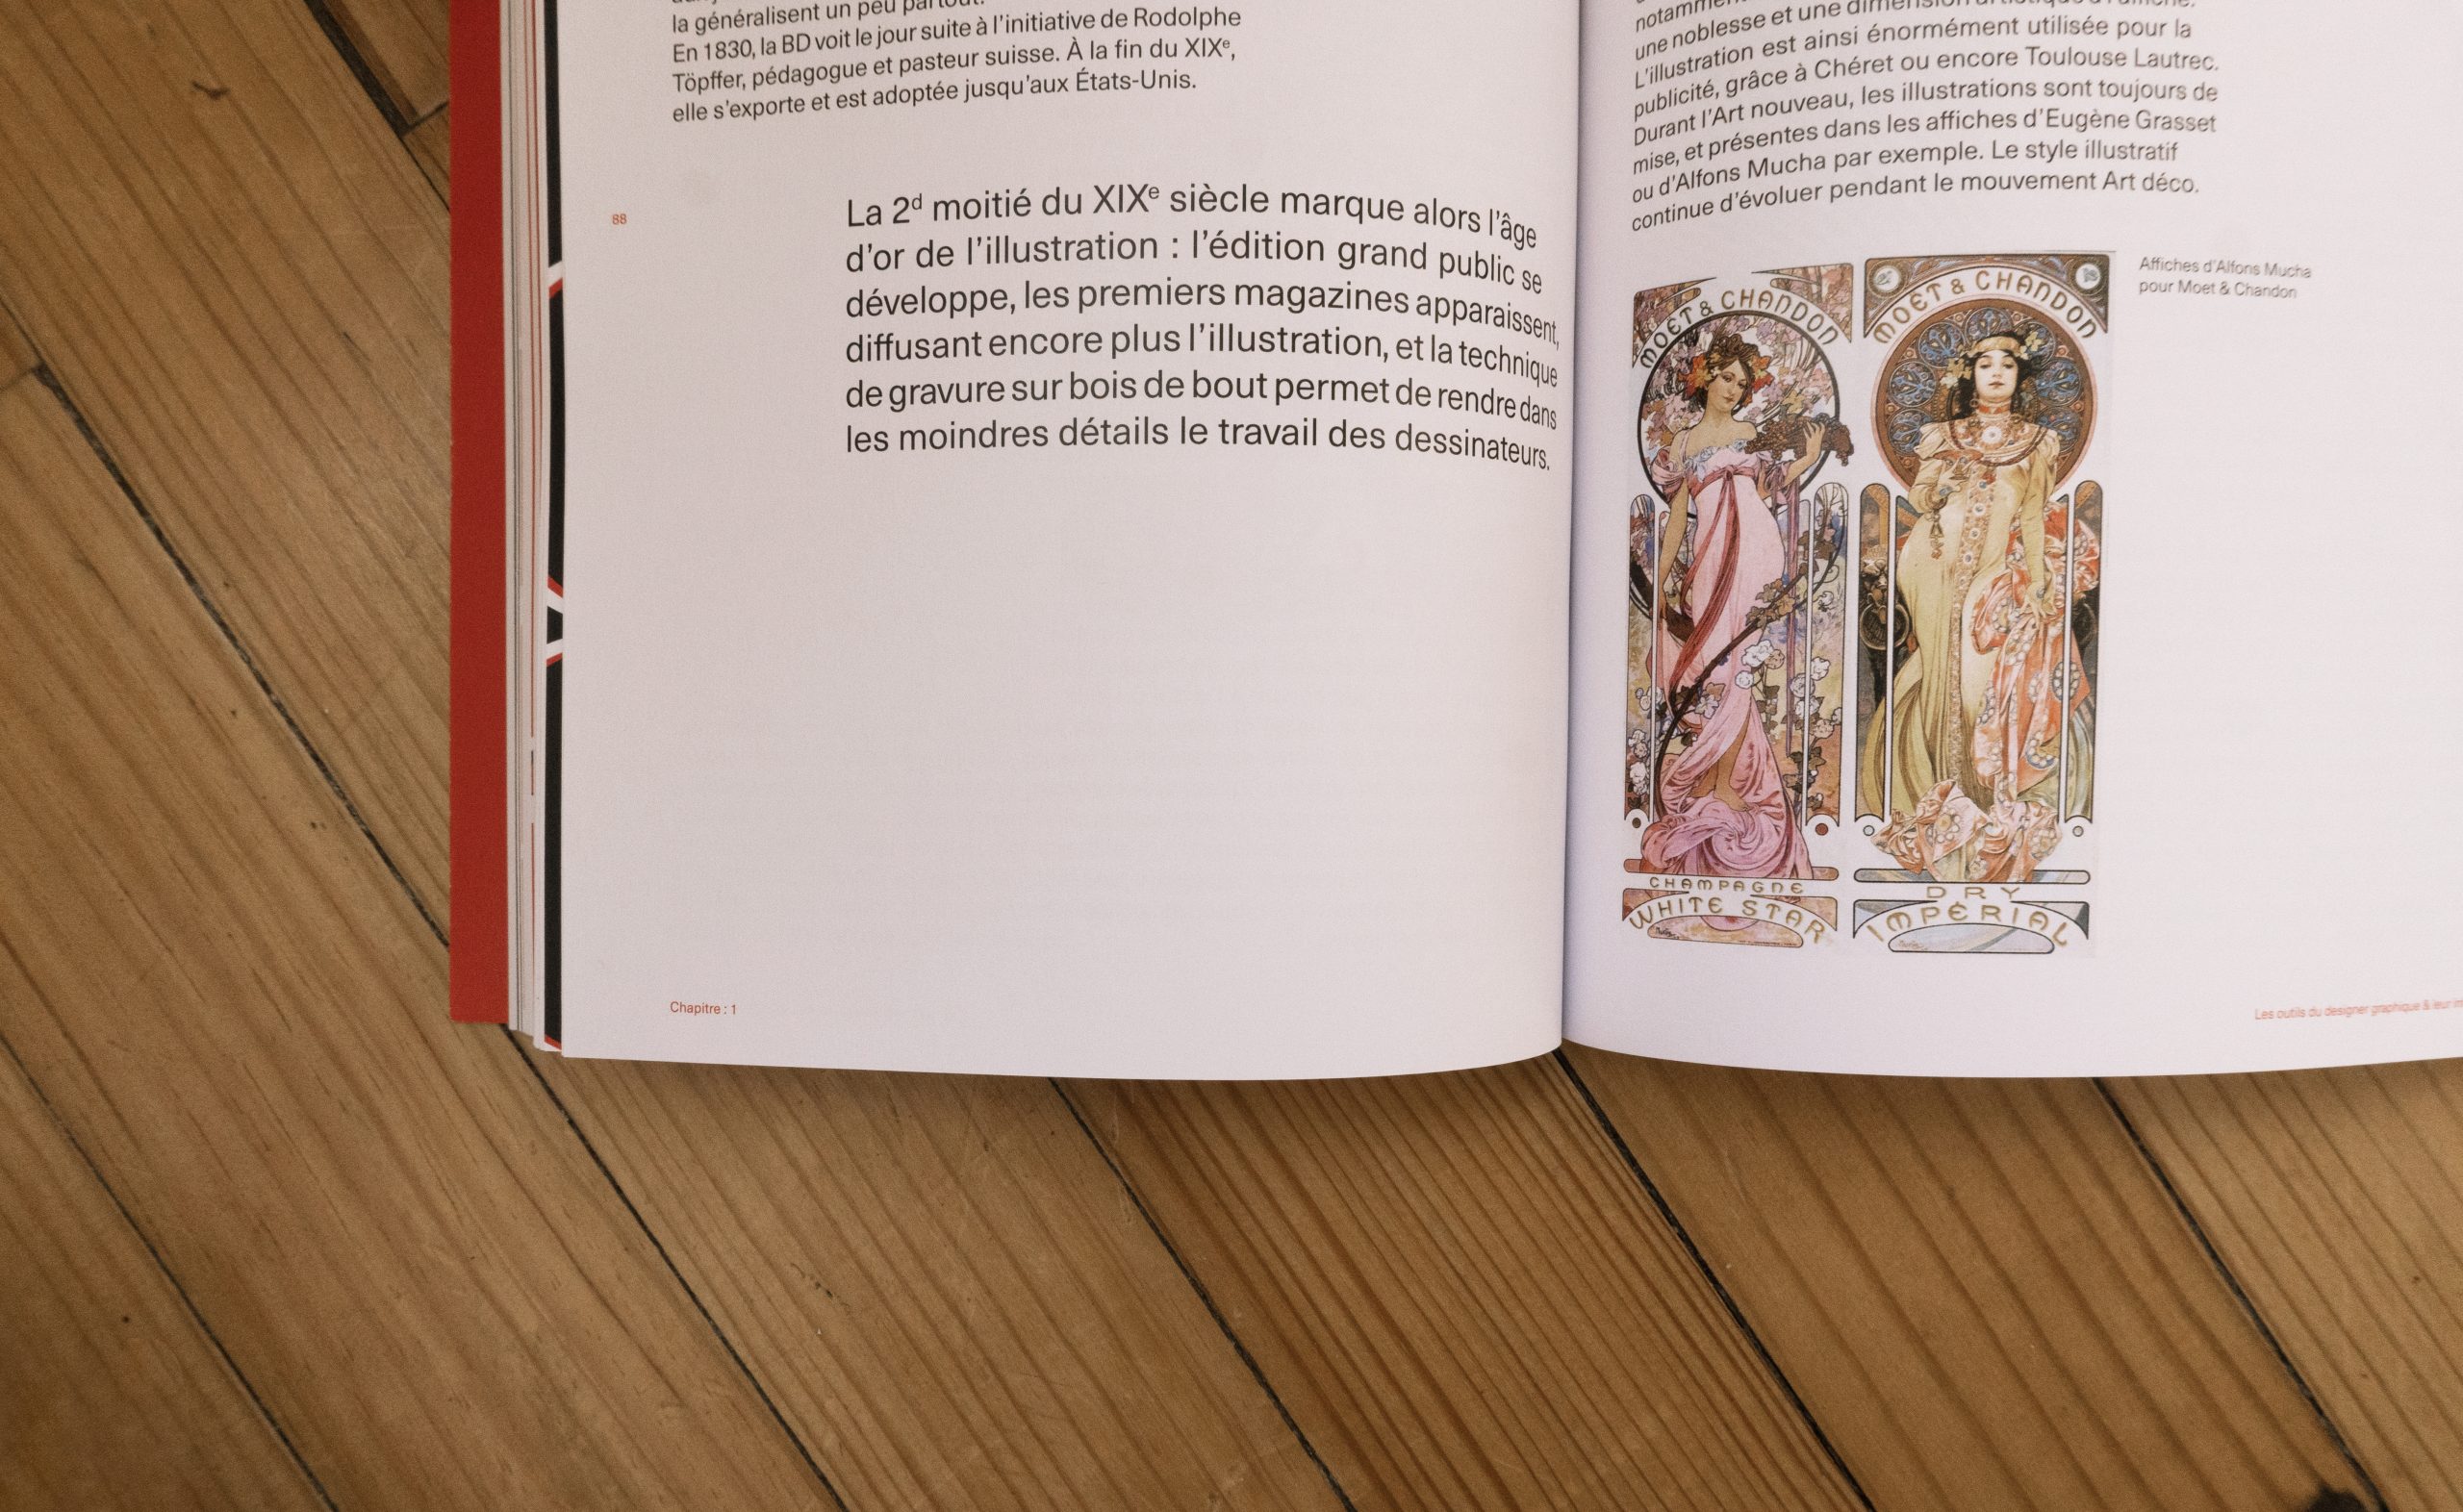 Visuel de l'intérieur du livre montrant en gros plan une des pages du chapitre sur l'illustration.